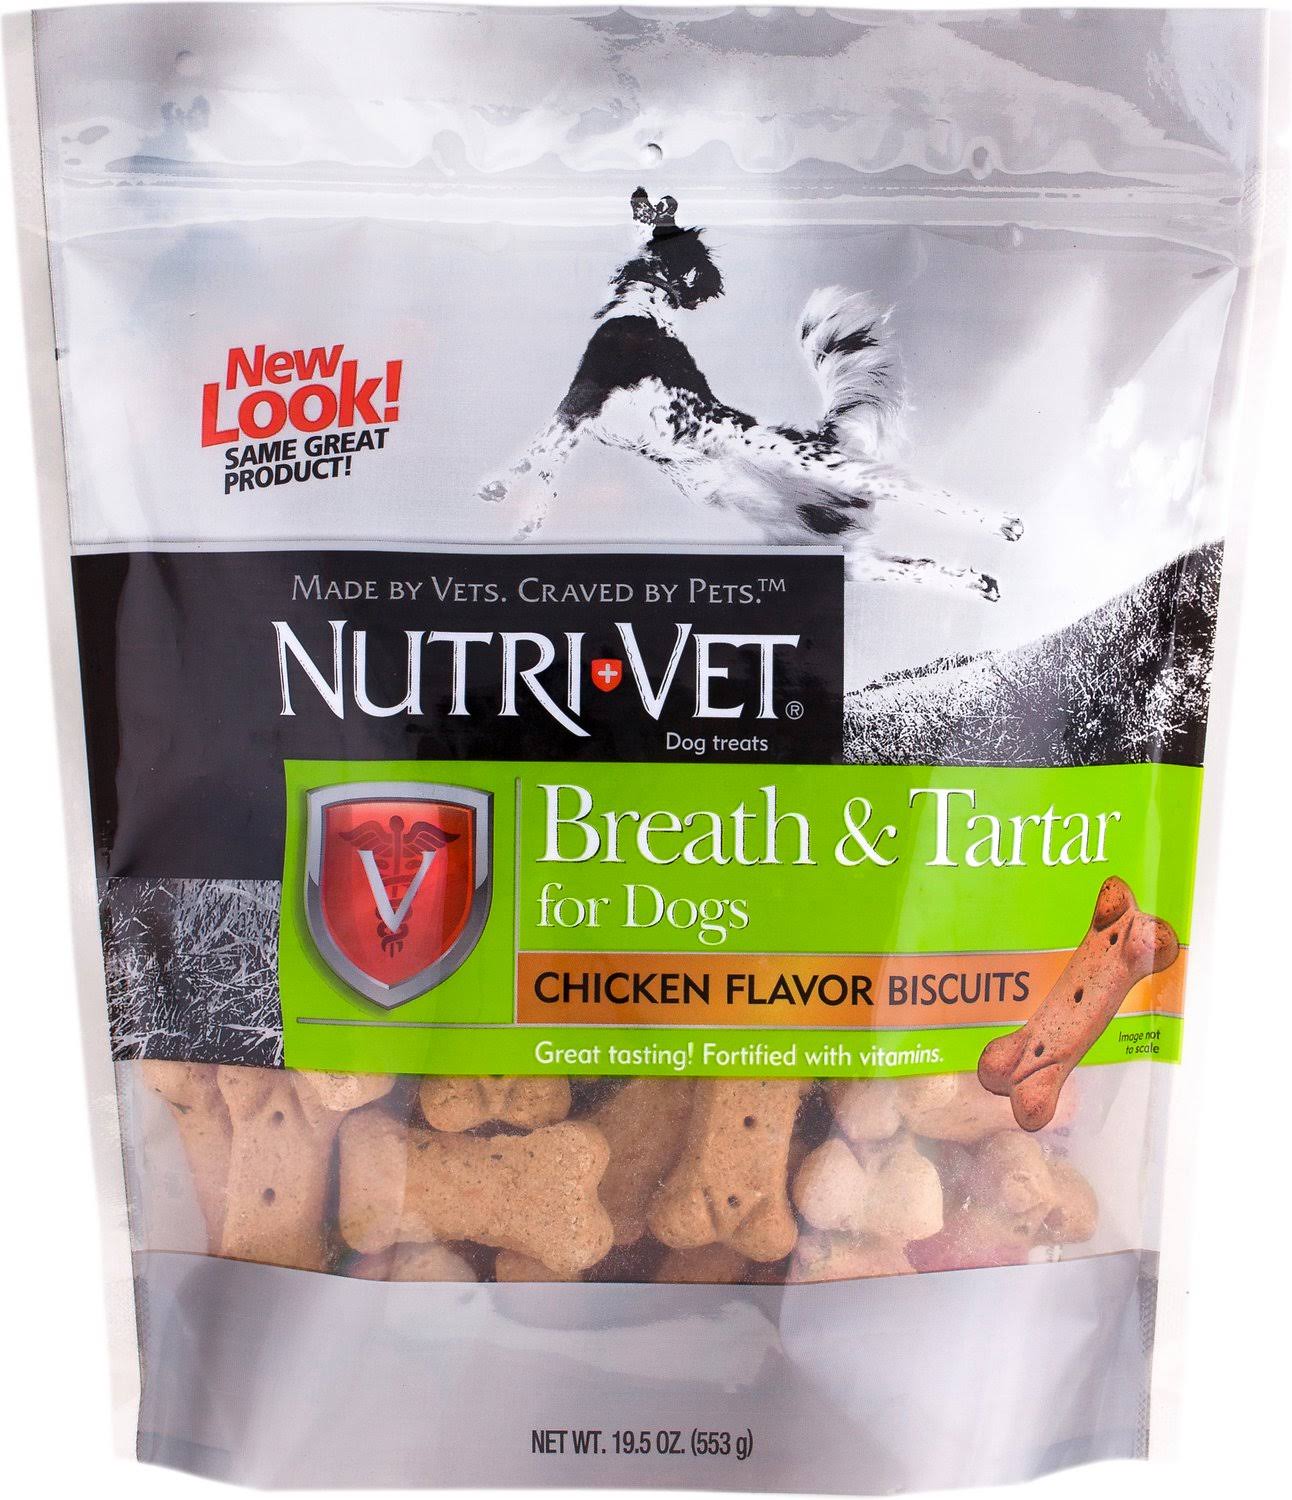 Nutri-Vet Breath & Tartar Chicken Flavored Biscuits - 19.5oz